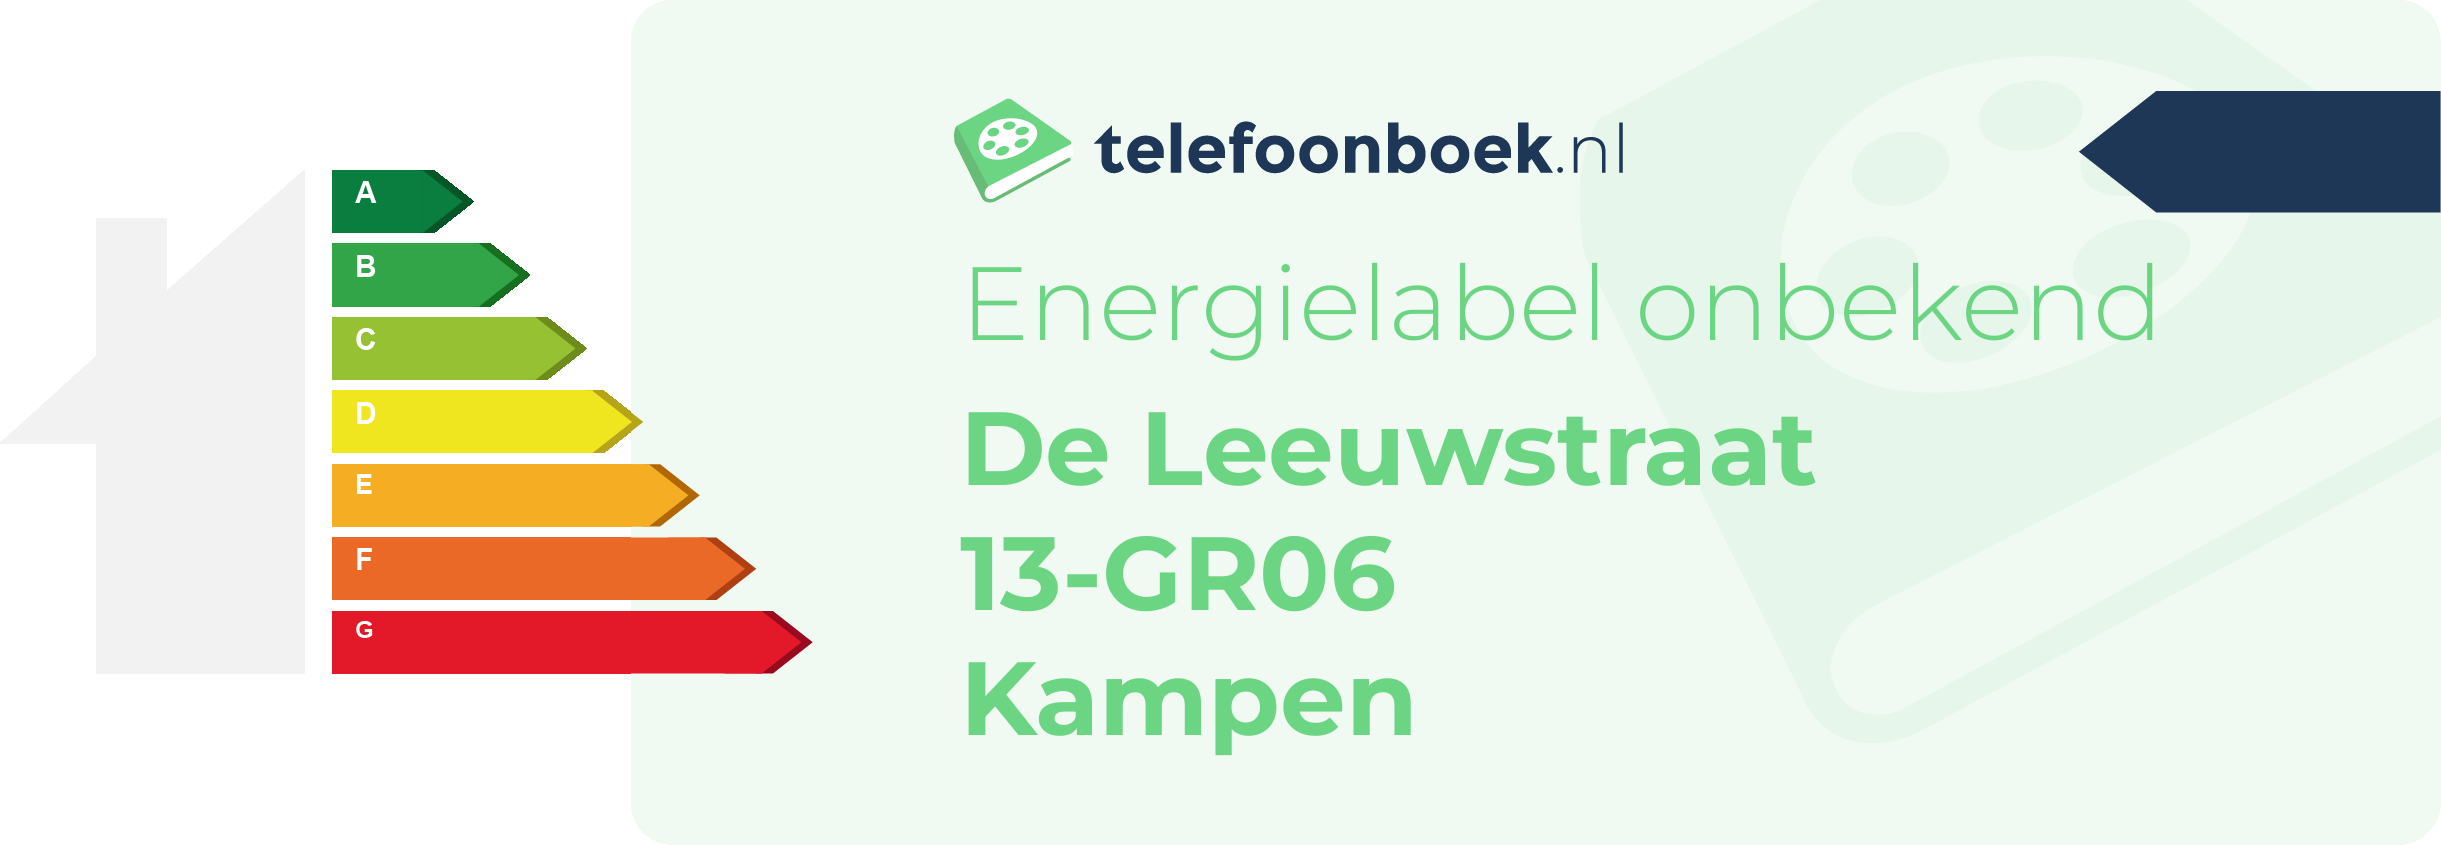 Energielabel De Leeuwstraat 13-GR06 Kampen